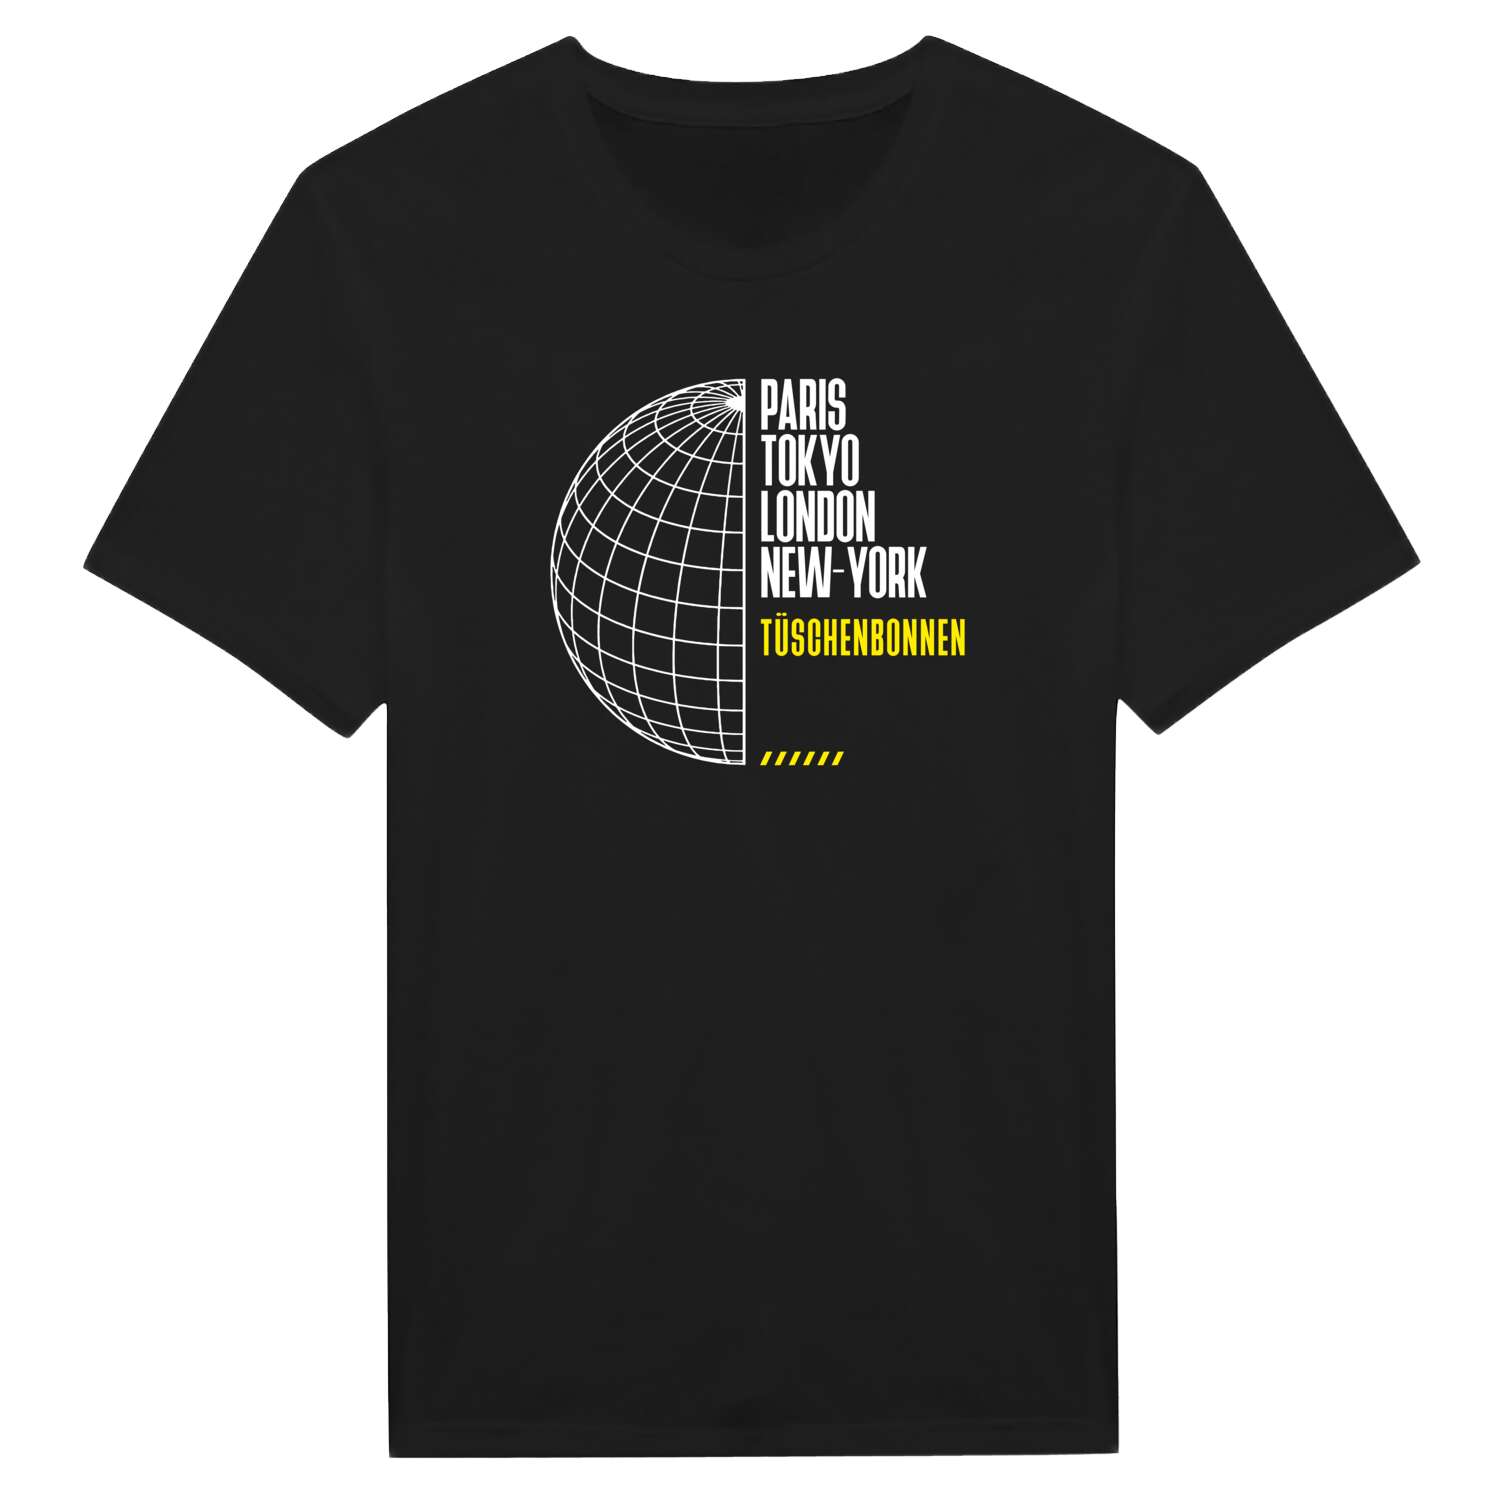 Tüschenbonnen T-Shirt »Paris Tokyo London«